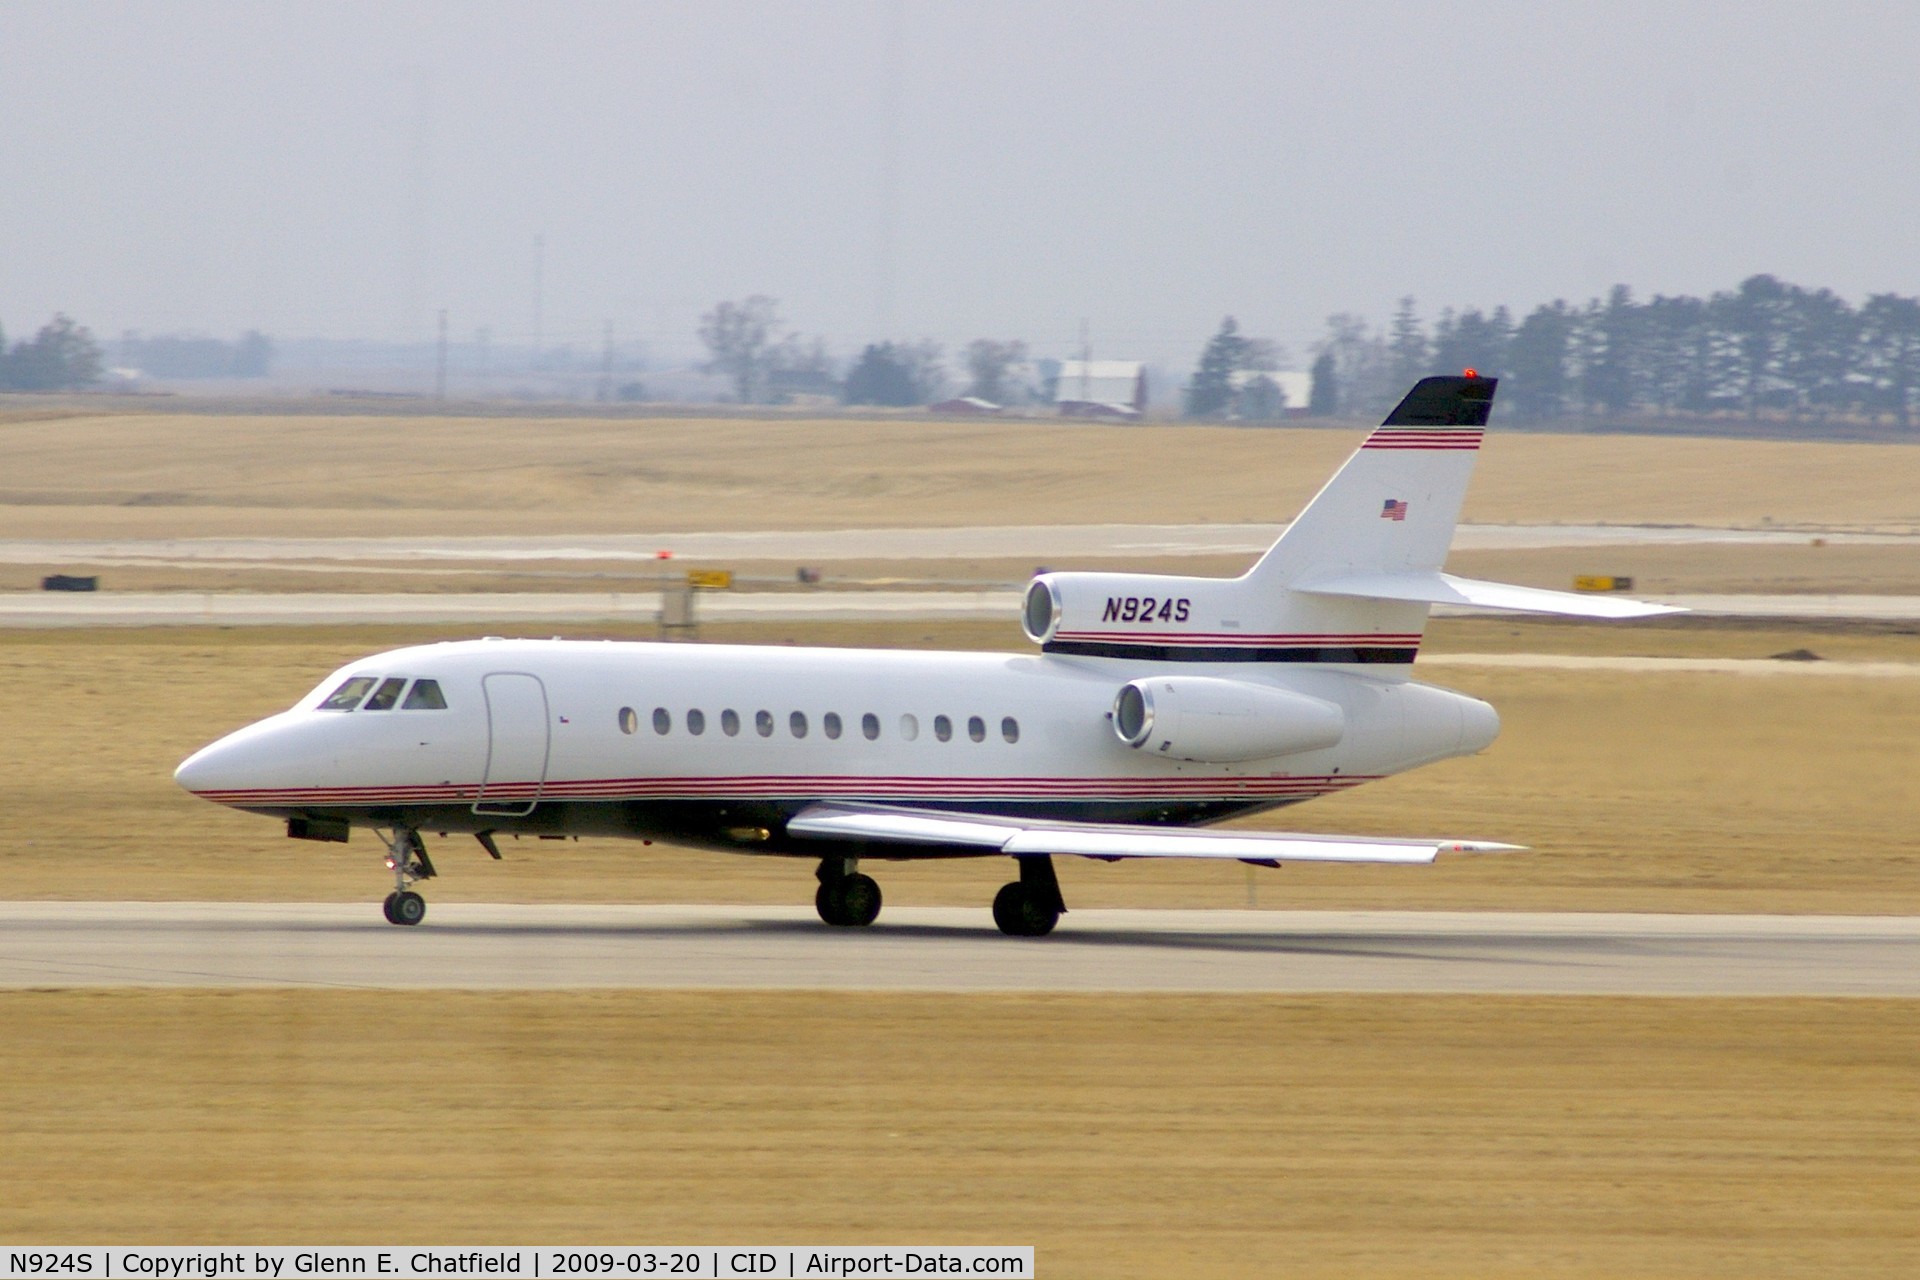 N924S, 1995 Dassault Falcon 900 C/N 149, Departing runway 13